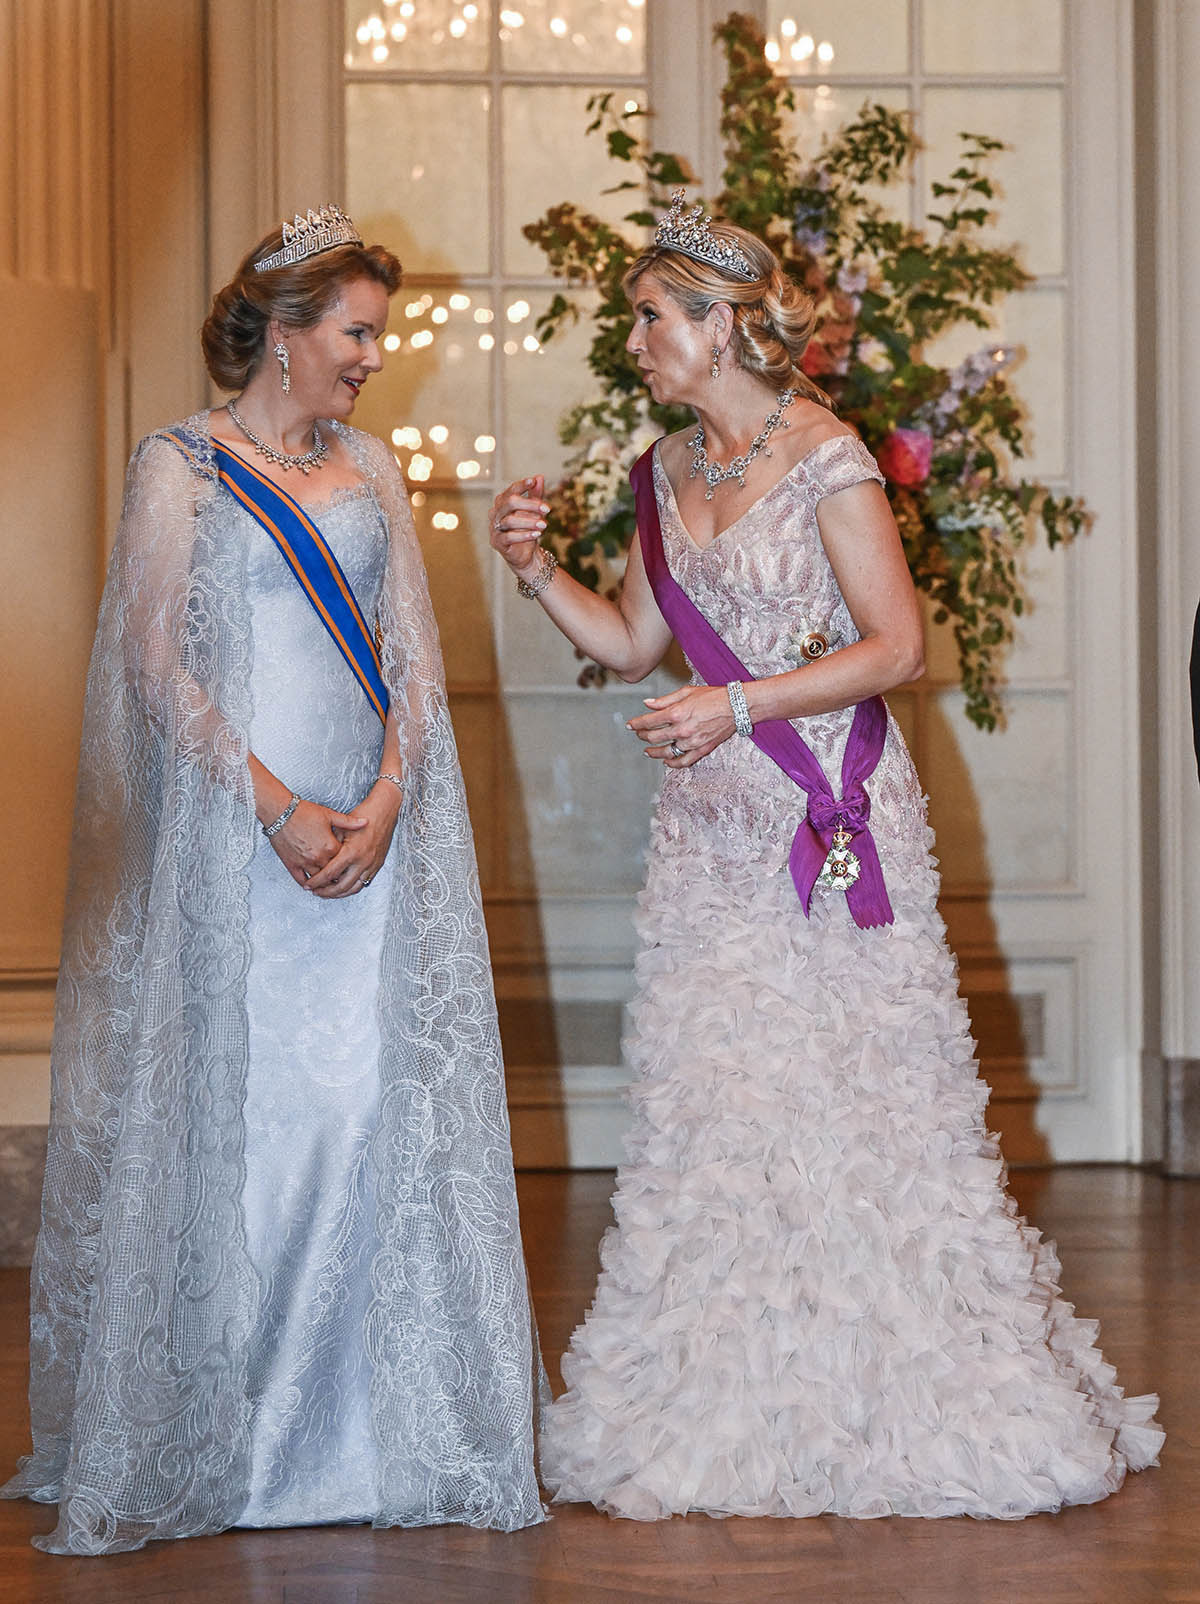 Las reinas Máxima y Matilde, con vestidos y joyas espectaculares en la cena de gala